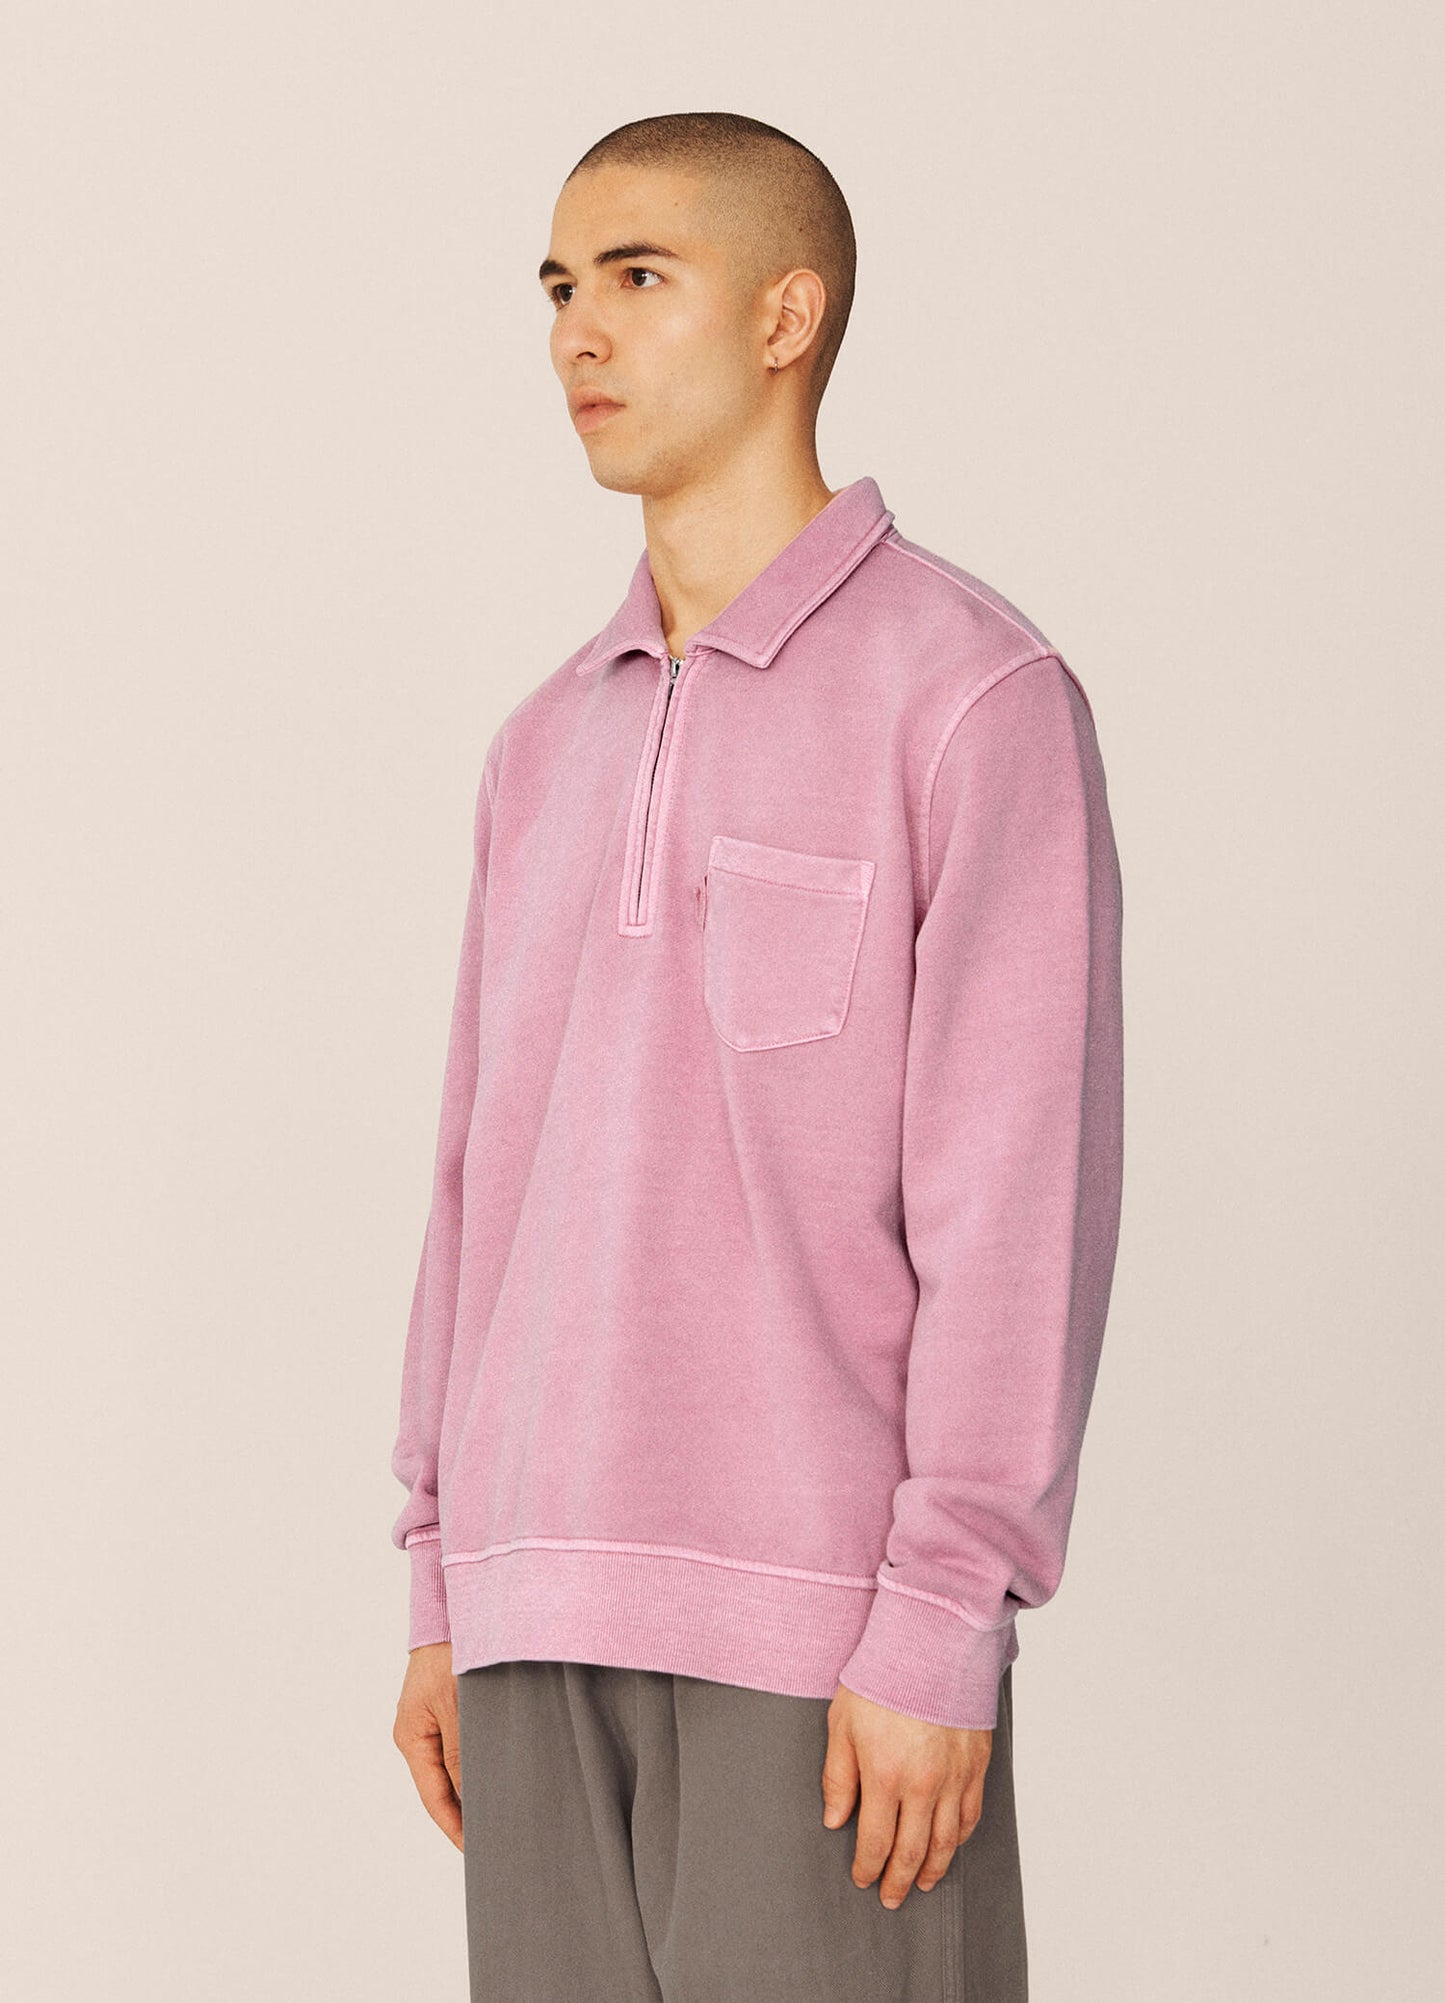 
                  
                    Sugden Sweatshirt - Pink
                  
                